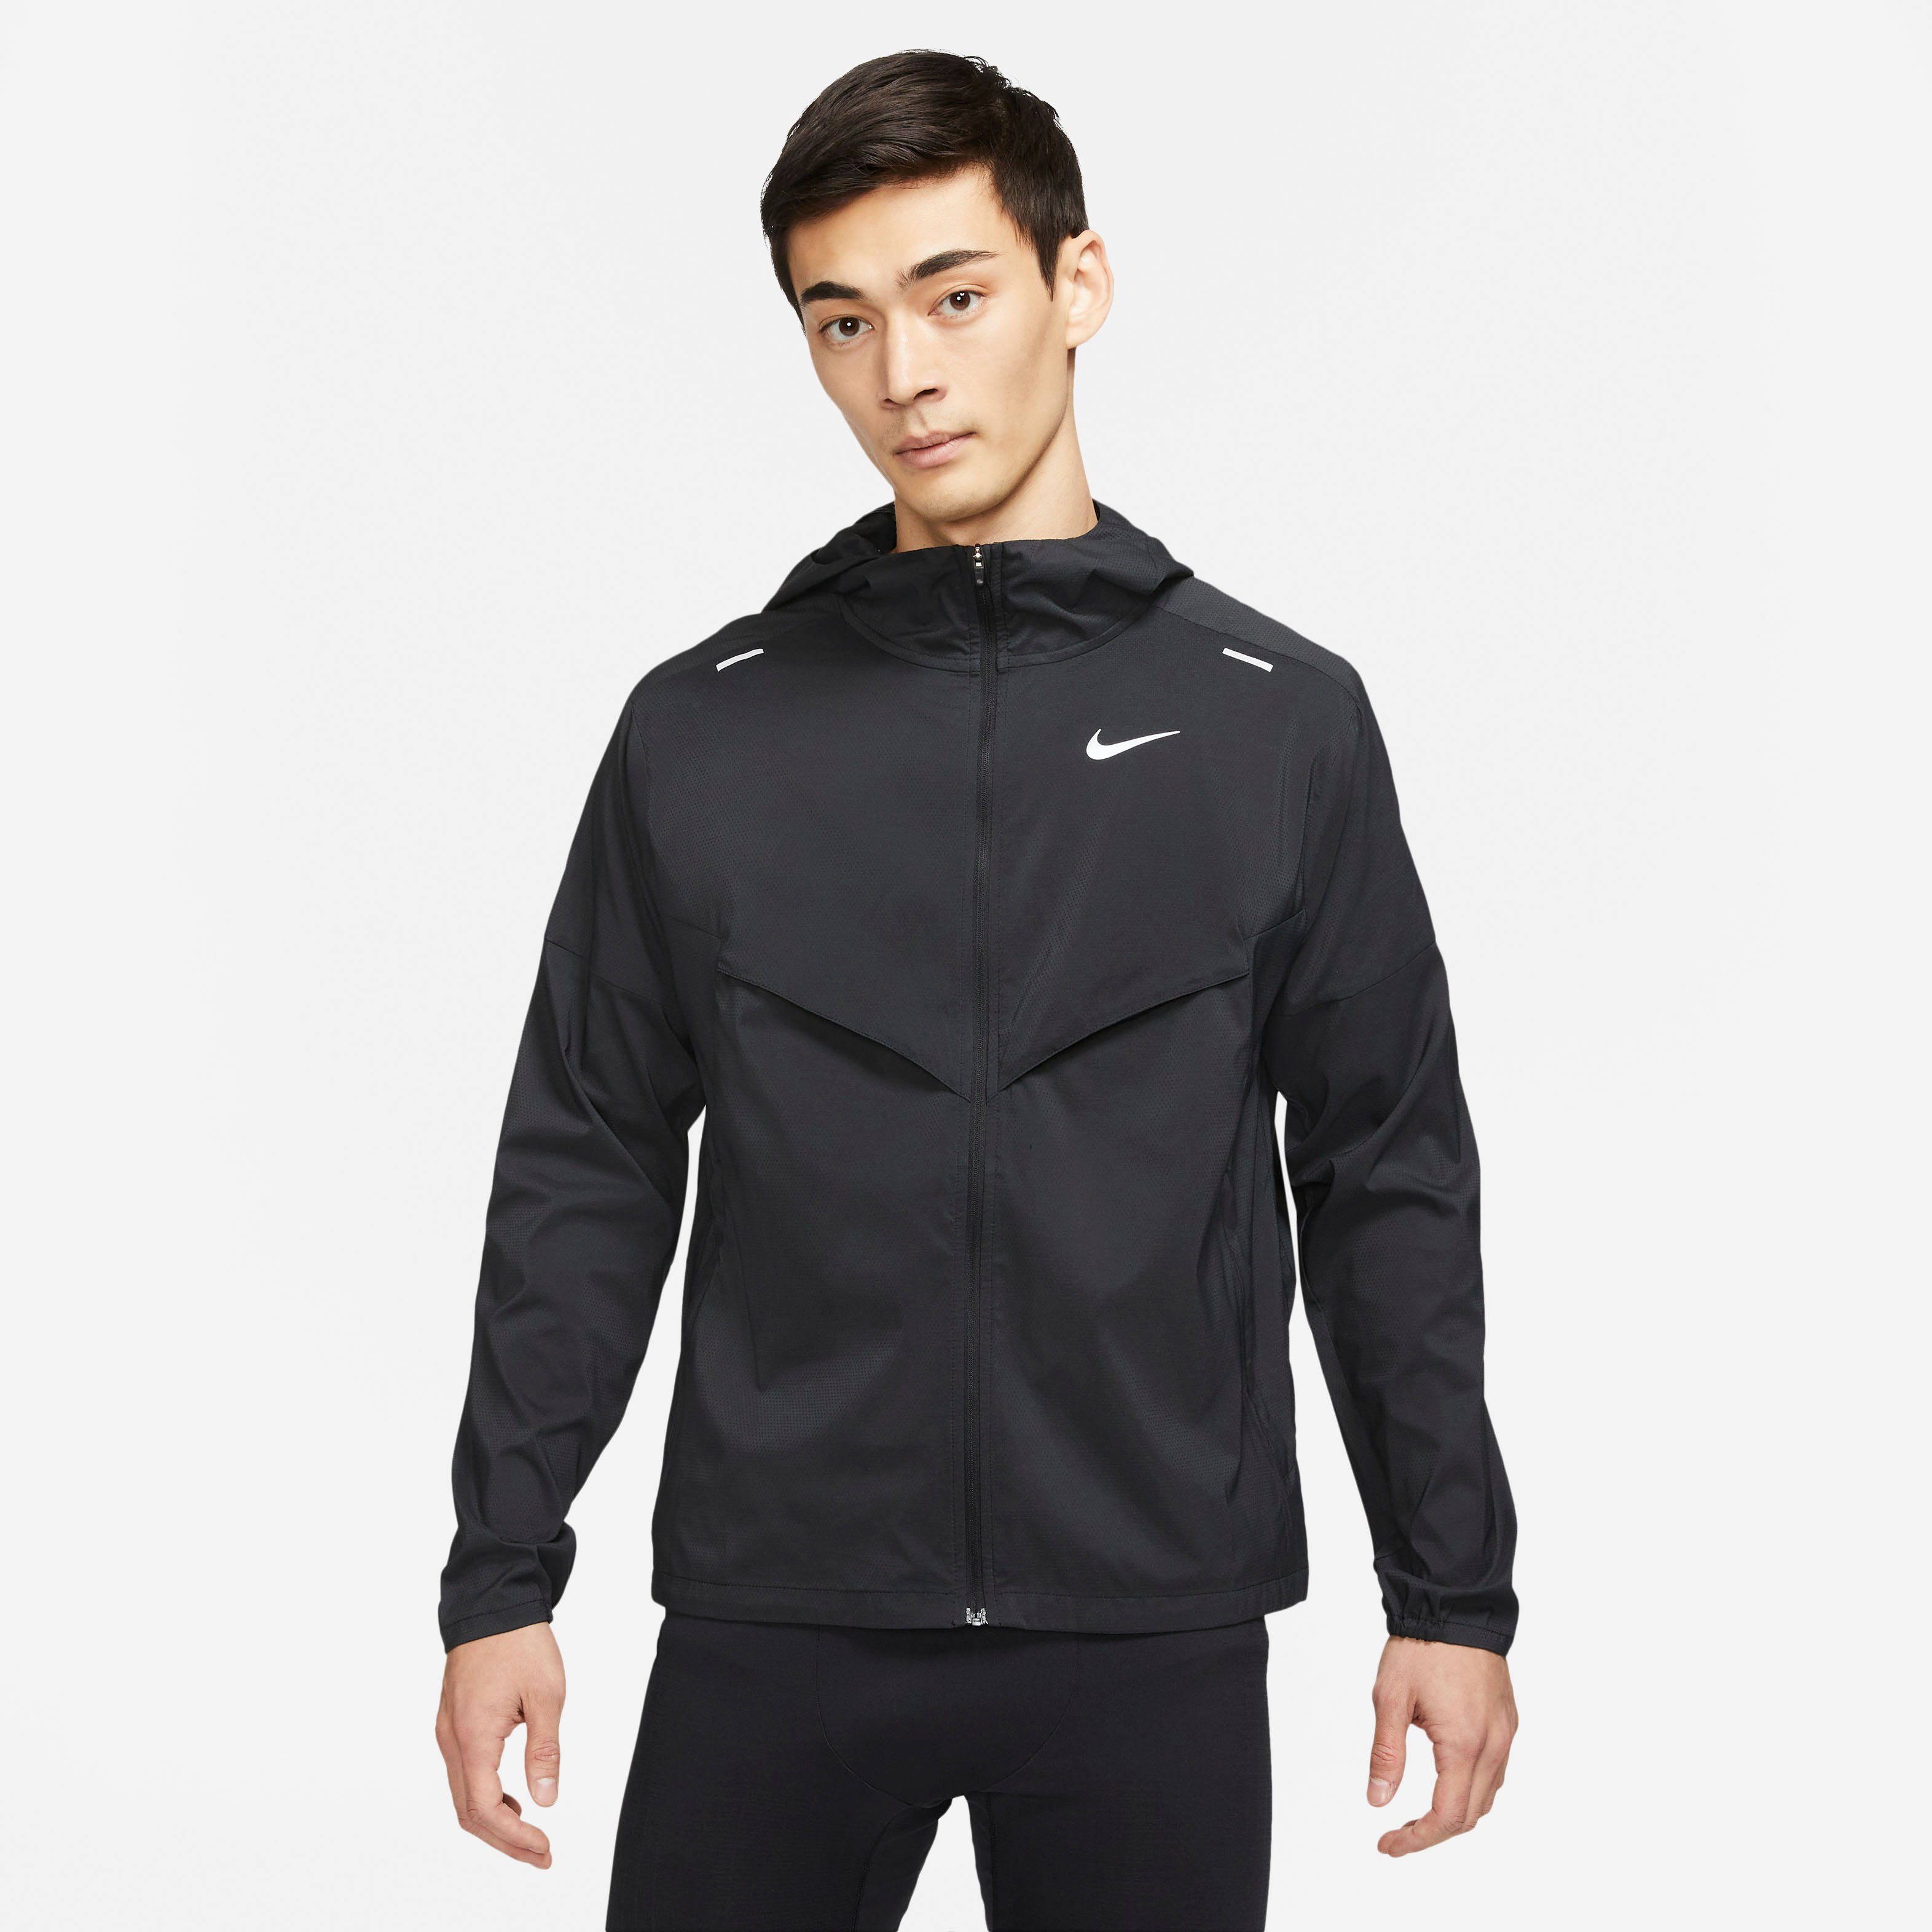 Nike Laufjacke Windrunner Running Jacket Men's schwarz